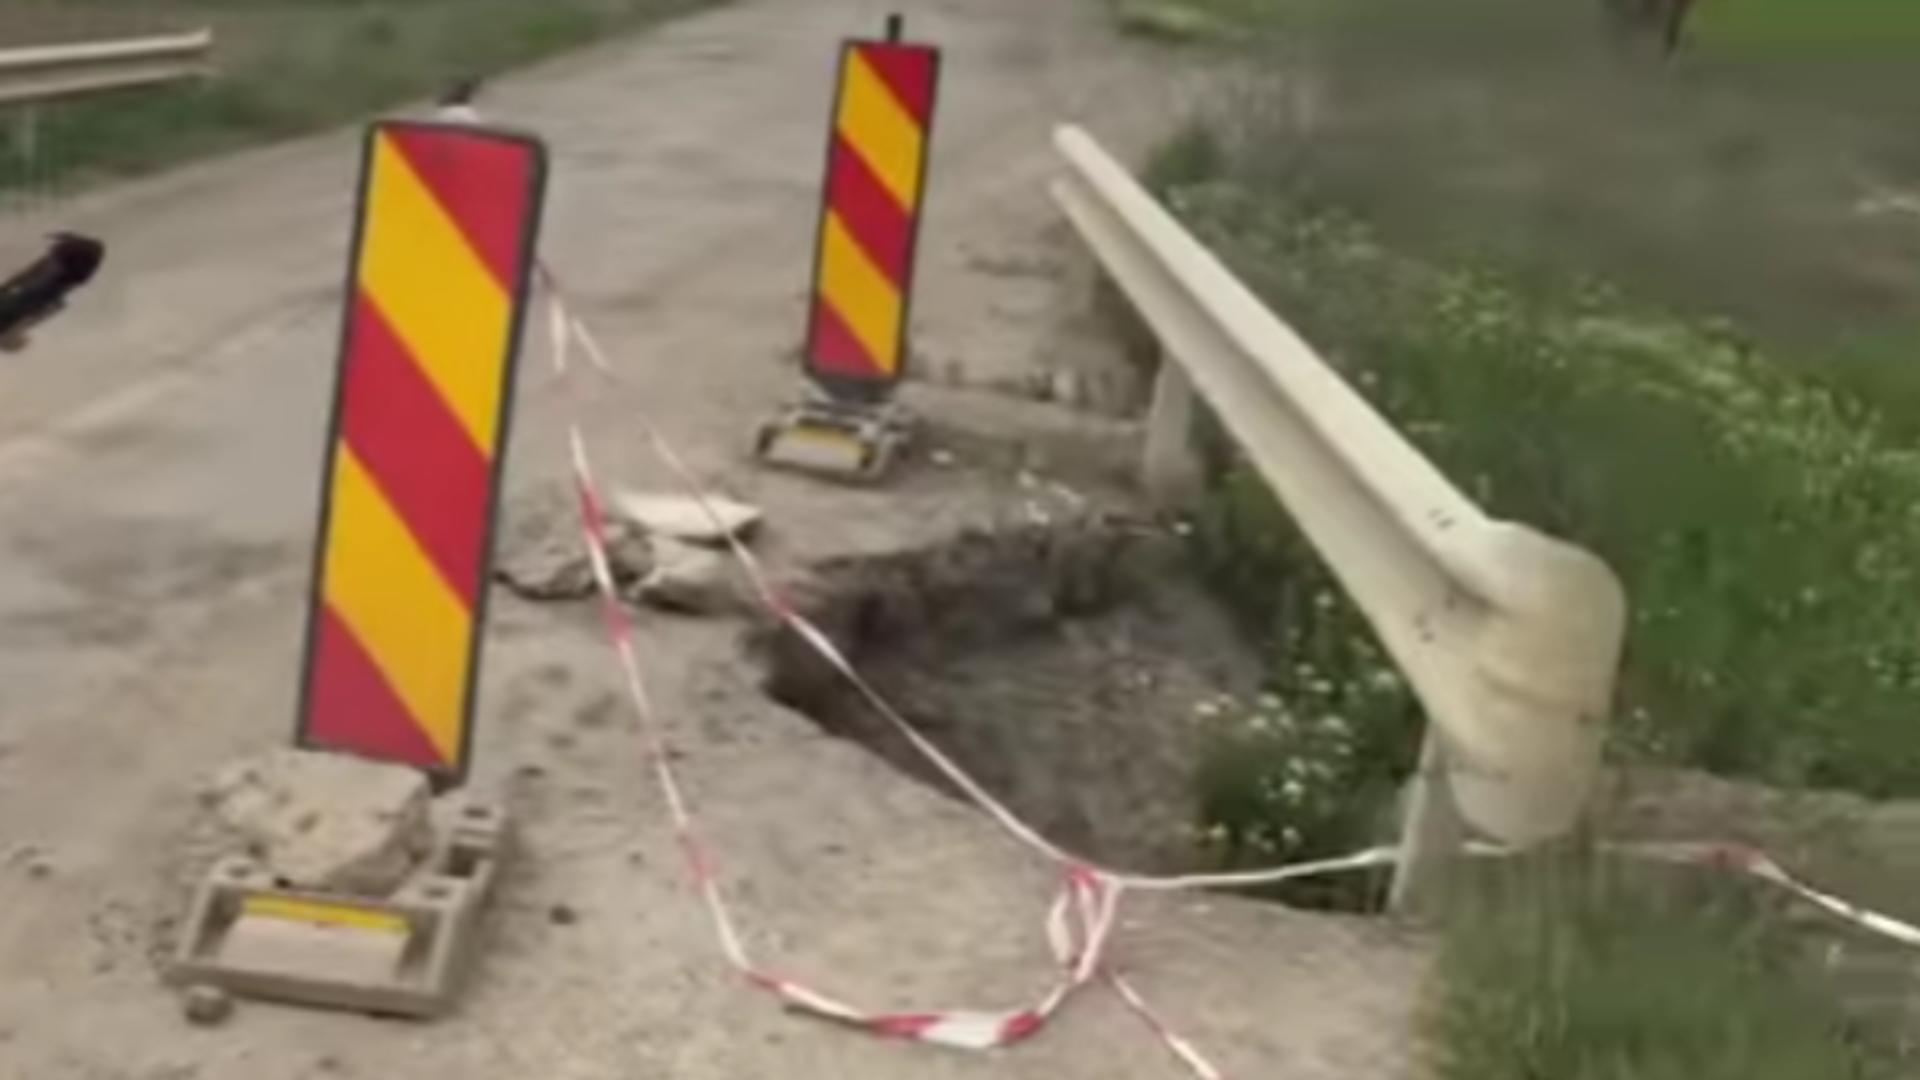 Pod în pericol de prăbușire/ Captură video 